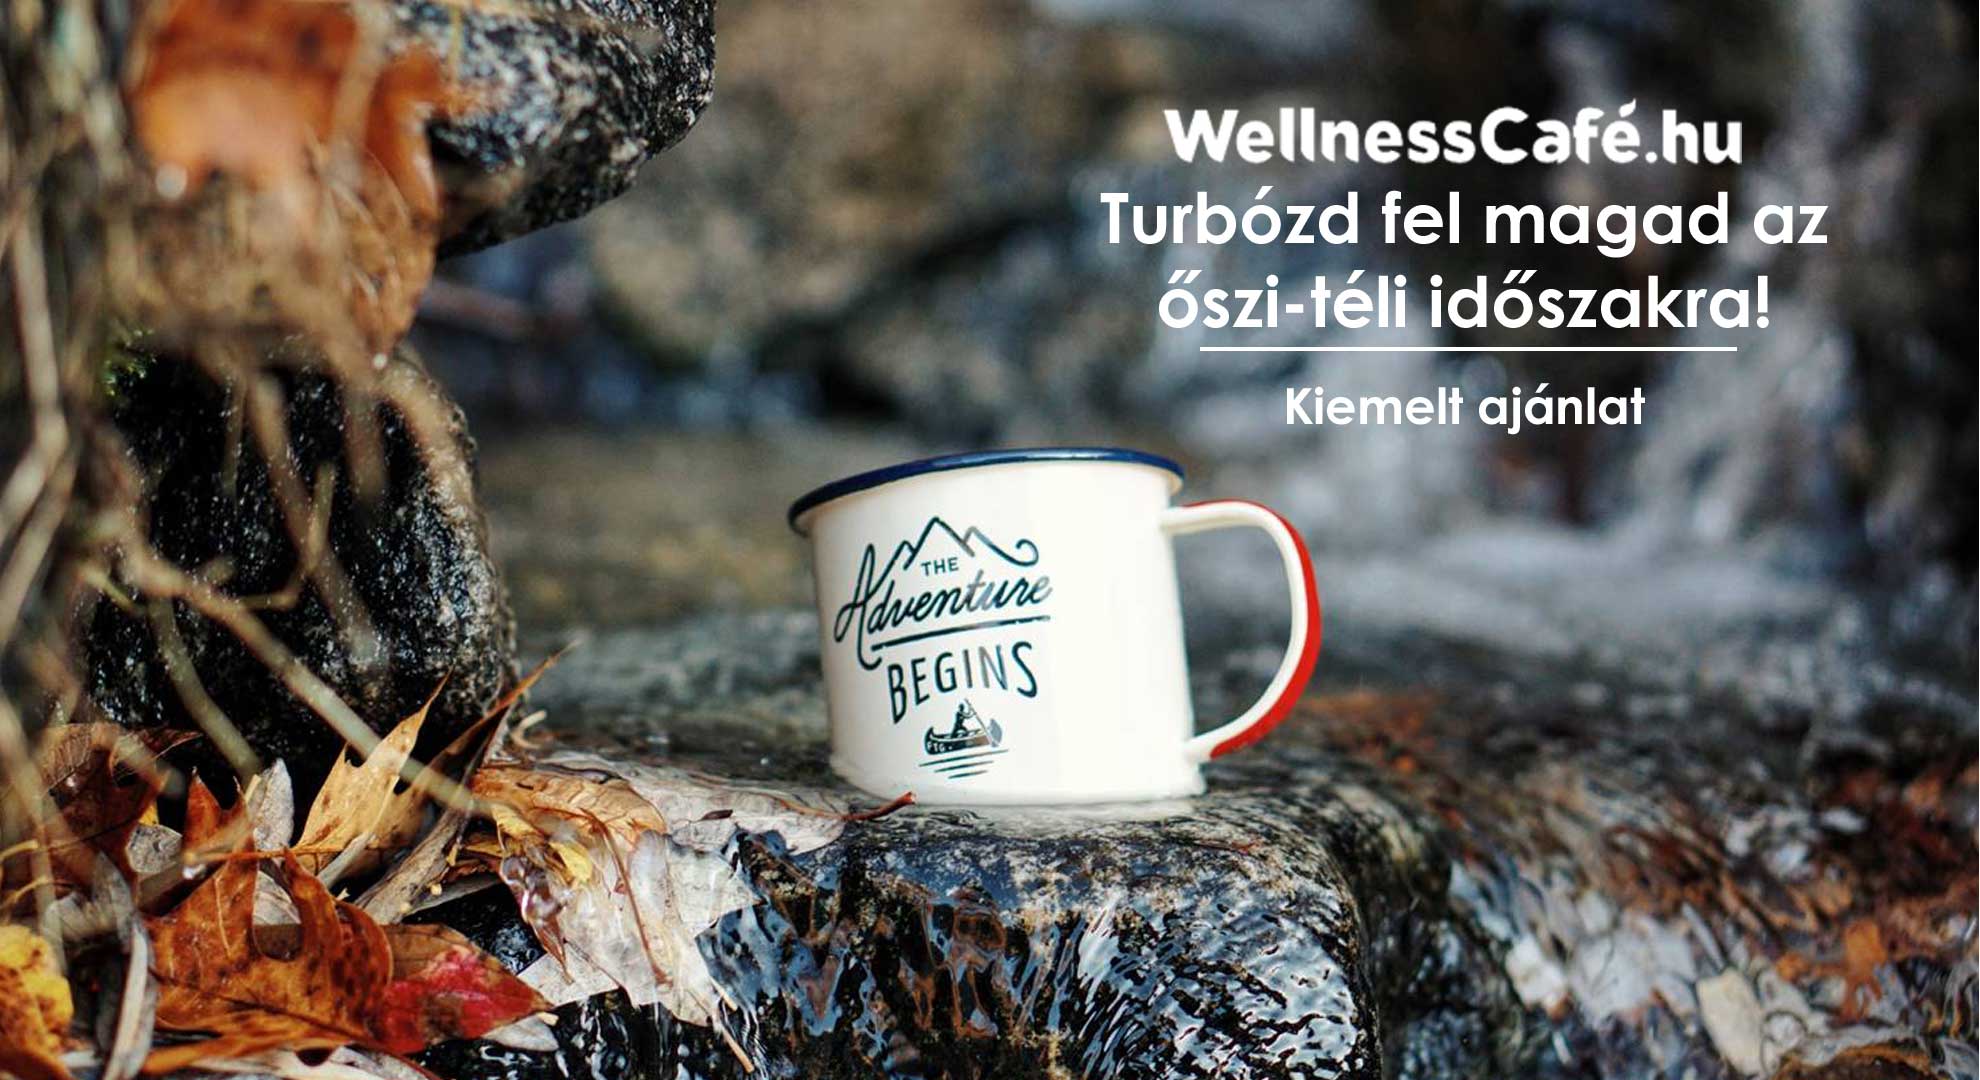 WellnessCafé – Turbózd fel magad az őszi-téli időszakra!